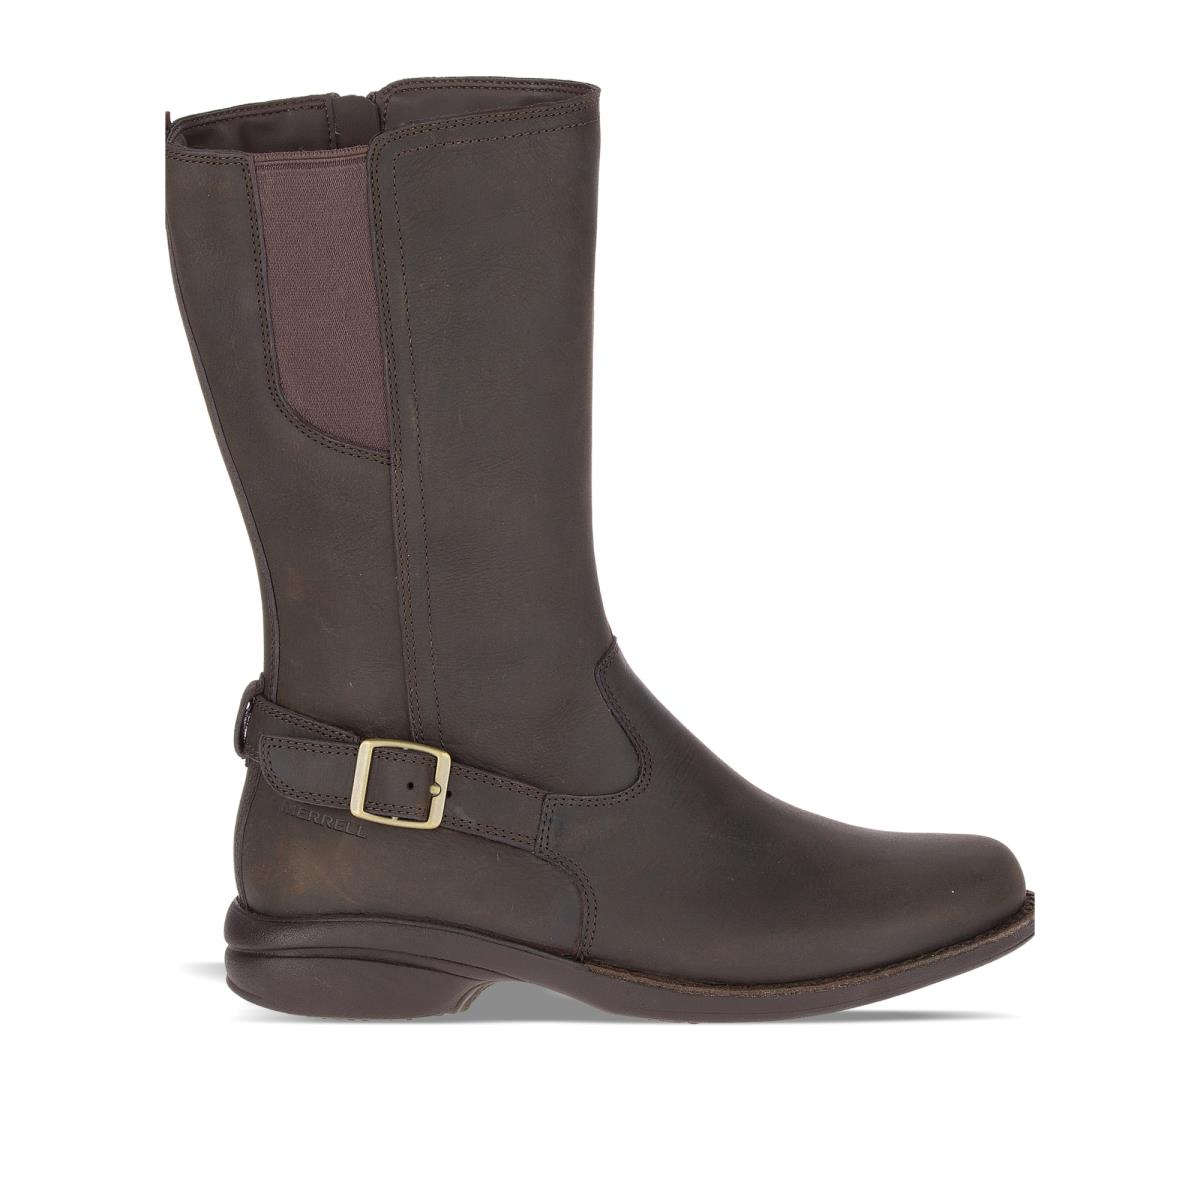 Merrell Women Andover Peak Waterproof Boots Leather Espresso